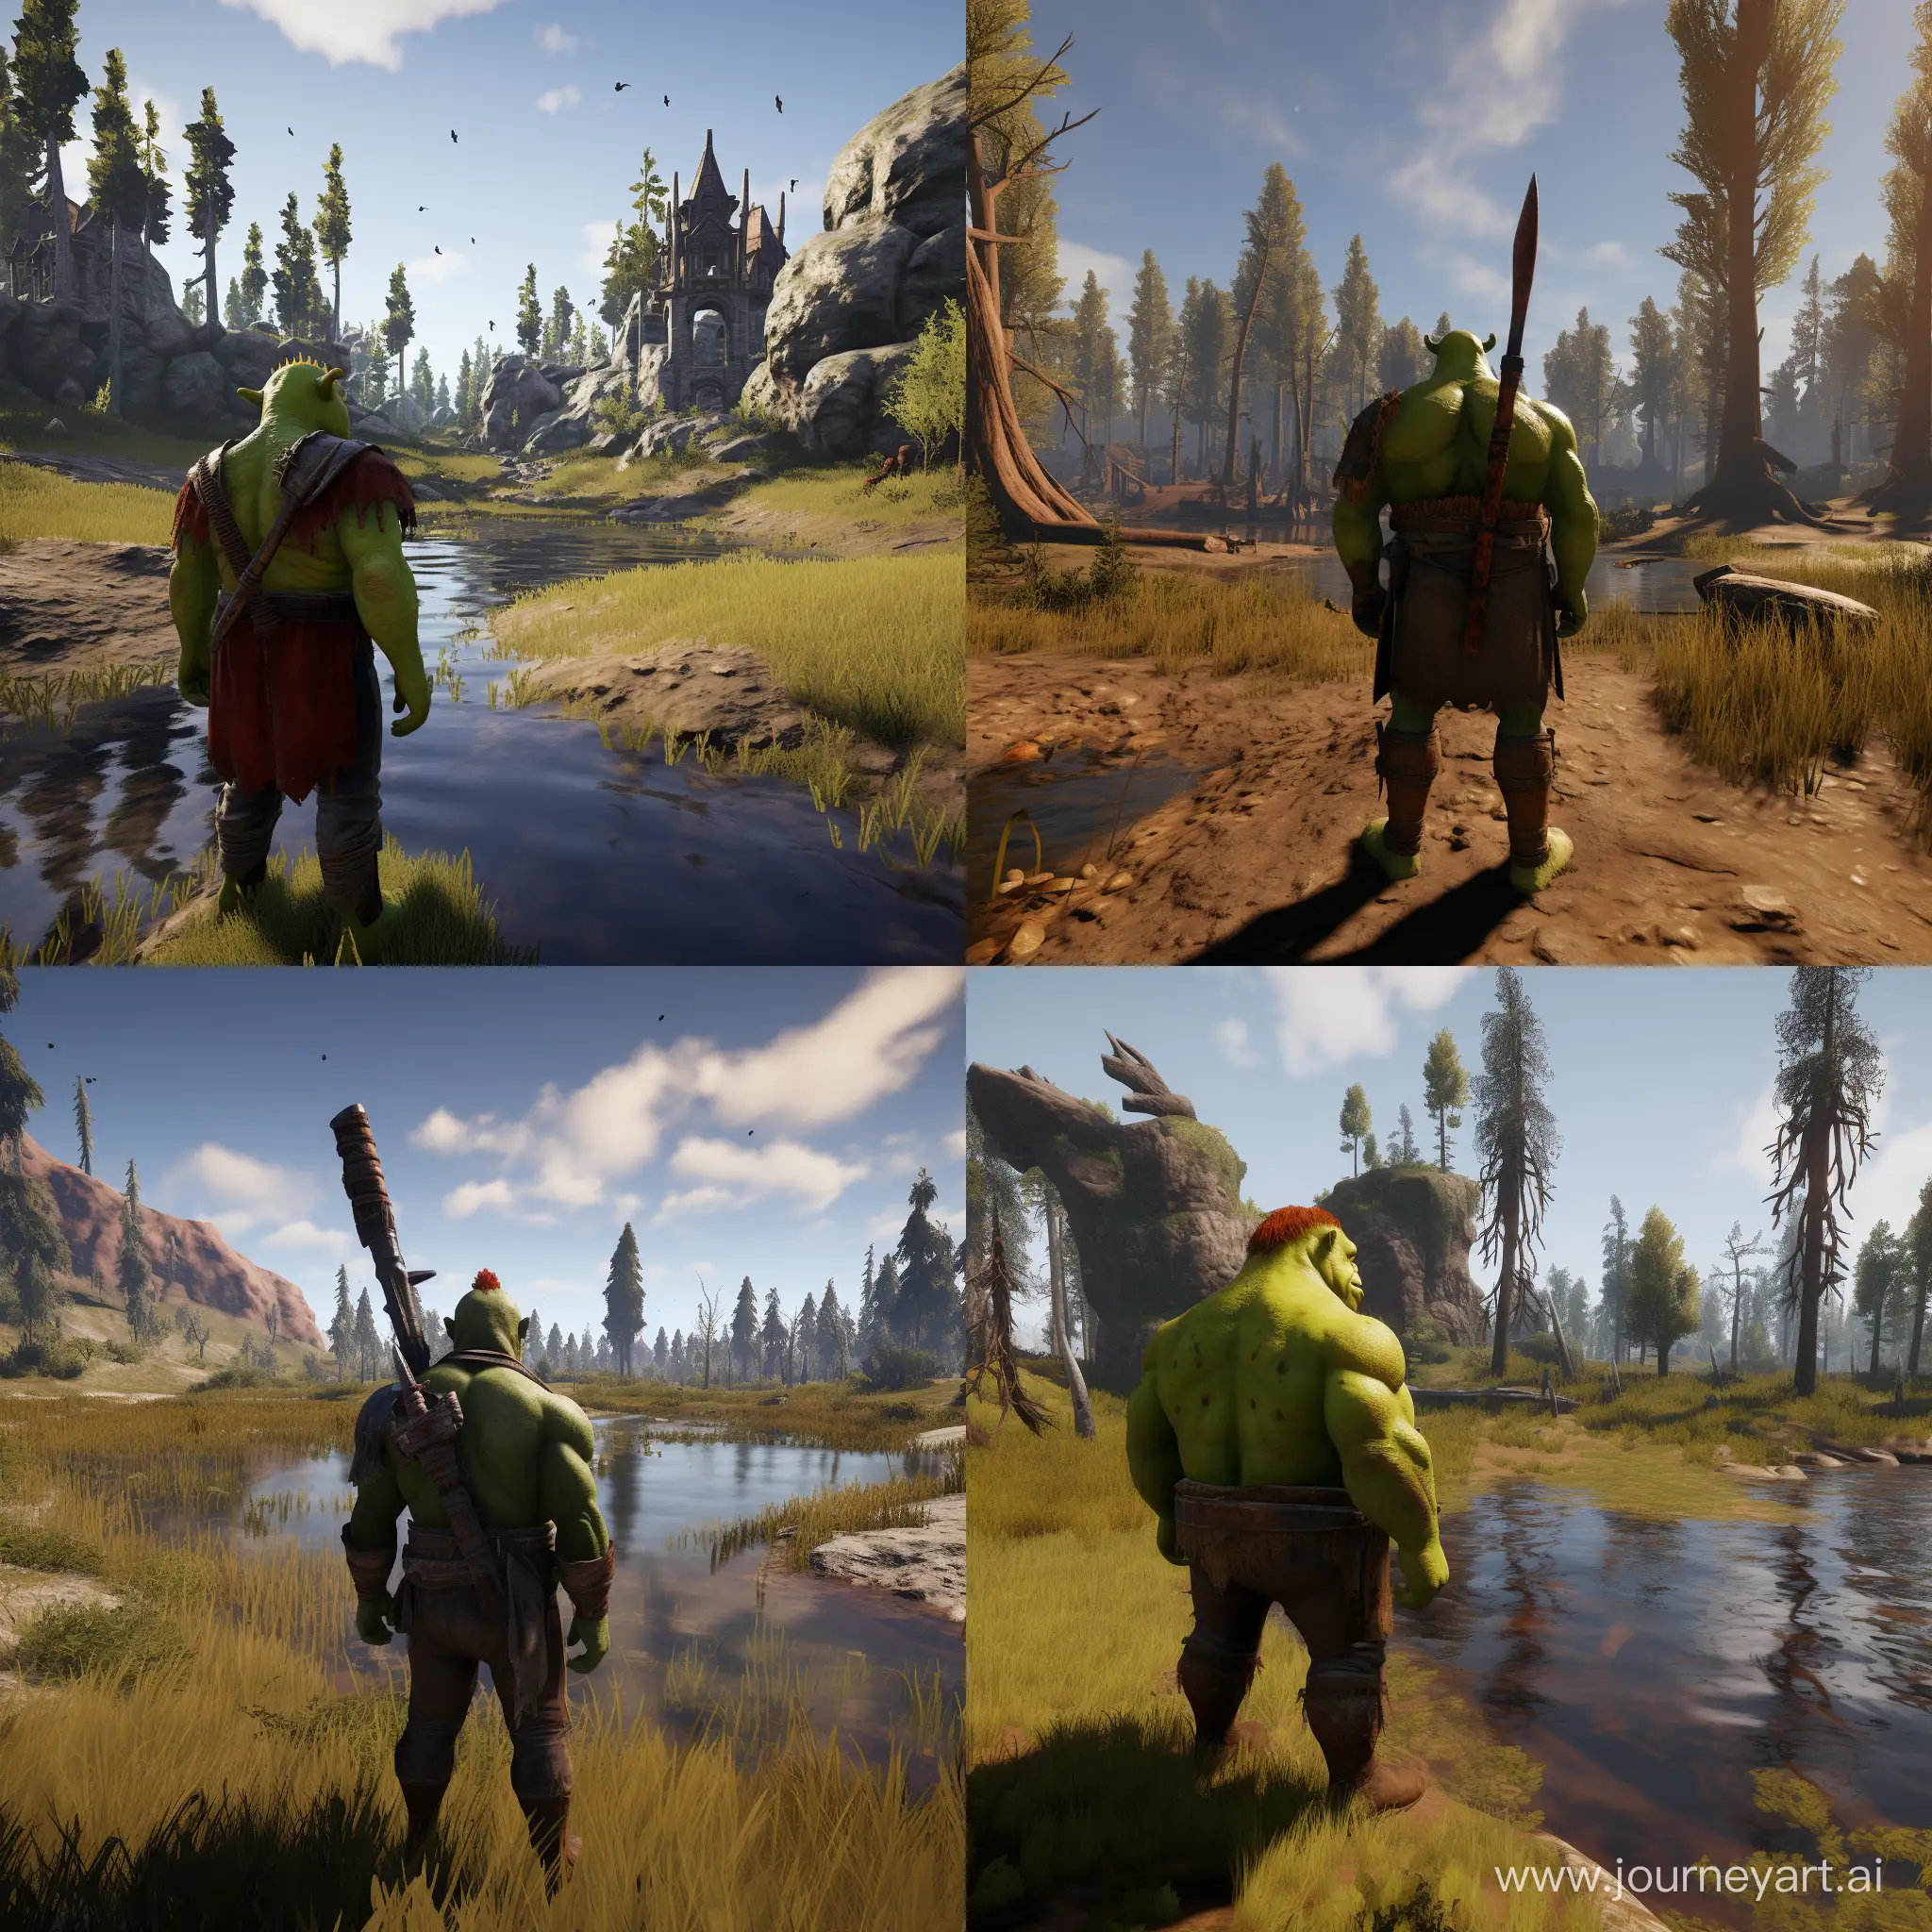 Shrek-Defends-His-Swamp-Against-Raiders-in-Rust-Game